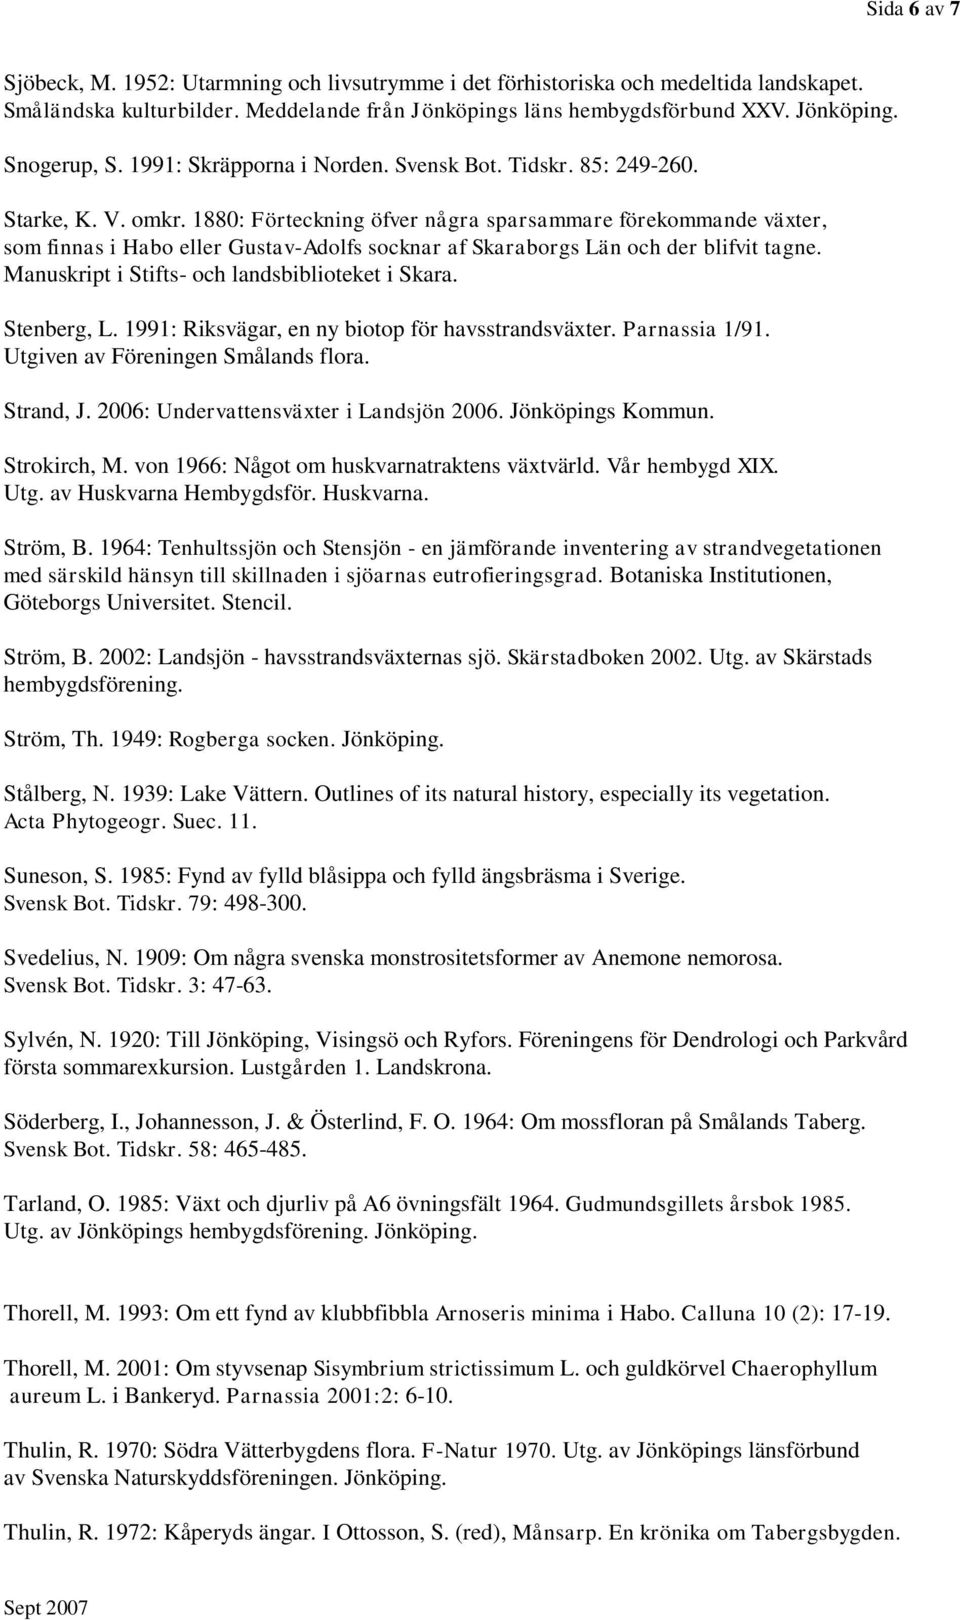 1880: Förteckning öfver några sparsammare förekommande växter, som finnas i Habo eller Gustav-Adolfs socknar af Skaraborgs Län och der blifvit tagne. Manuskript i Stifts- och landsbiblioteket i Skara.